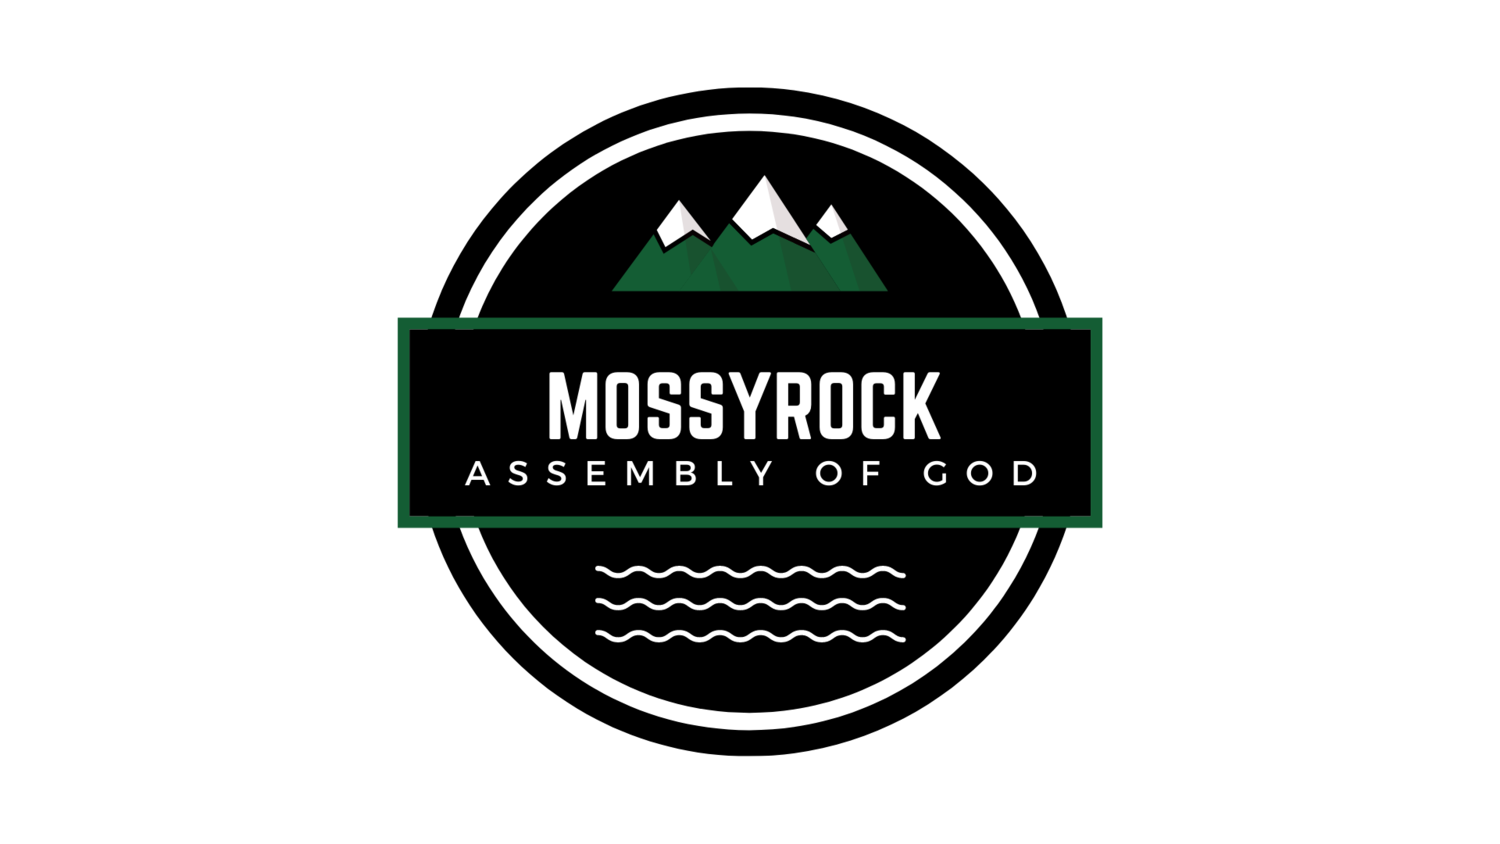 Mossyrock Assembly of God